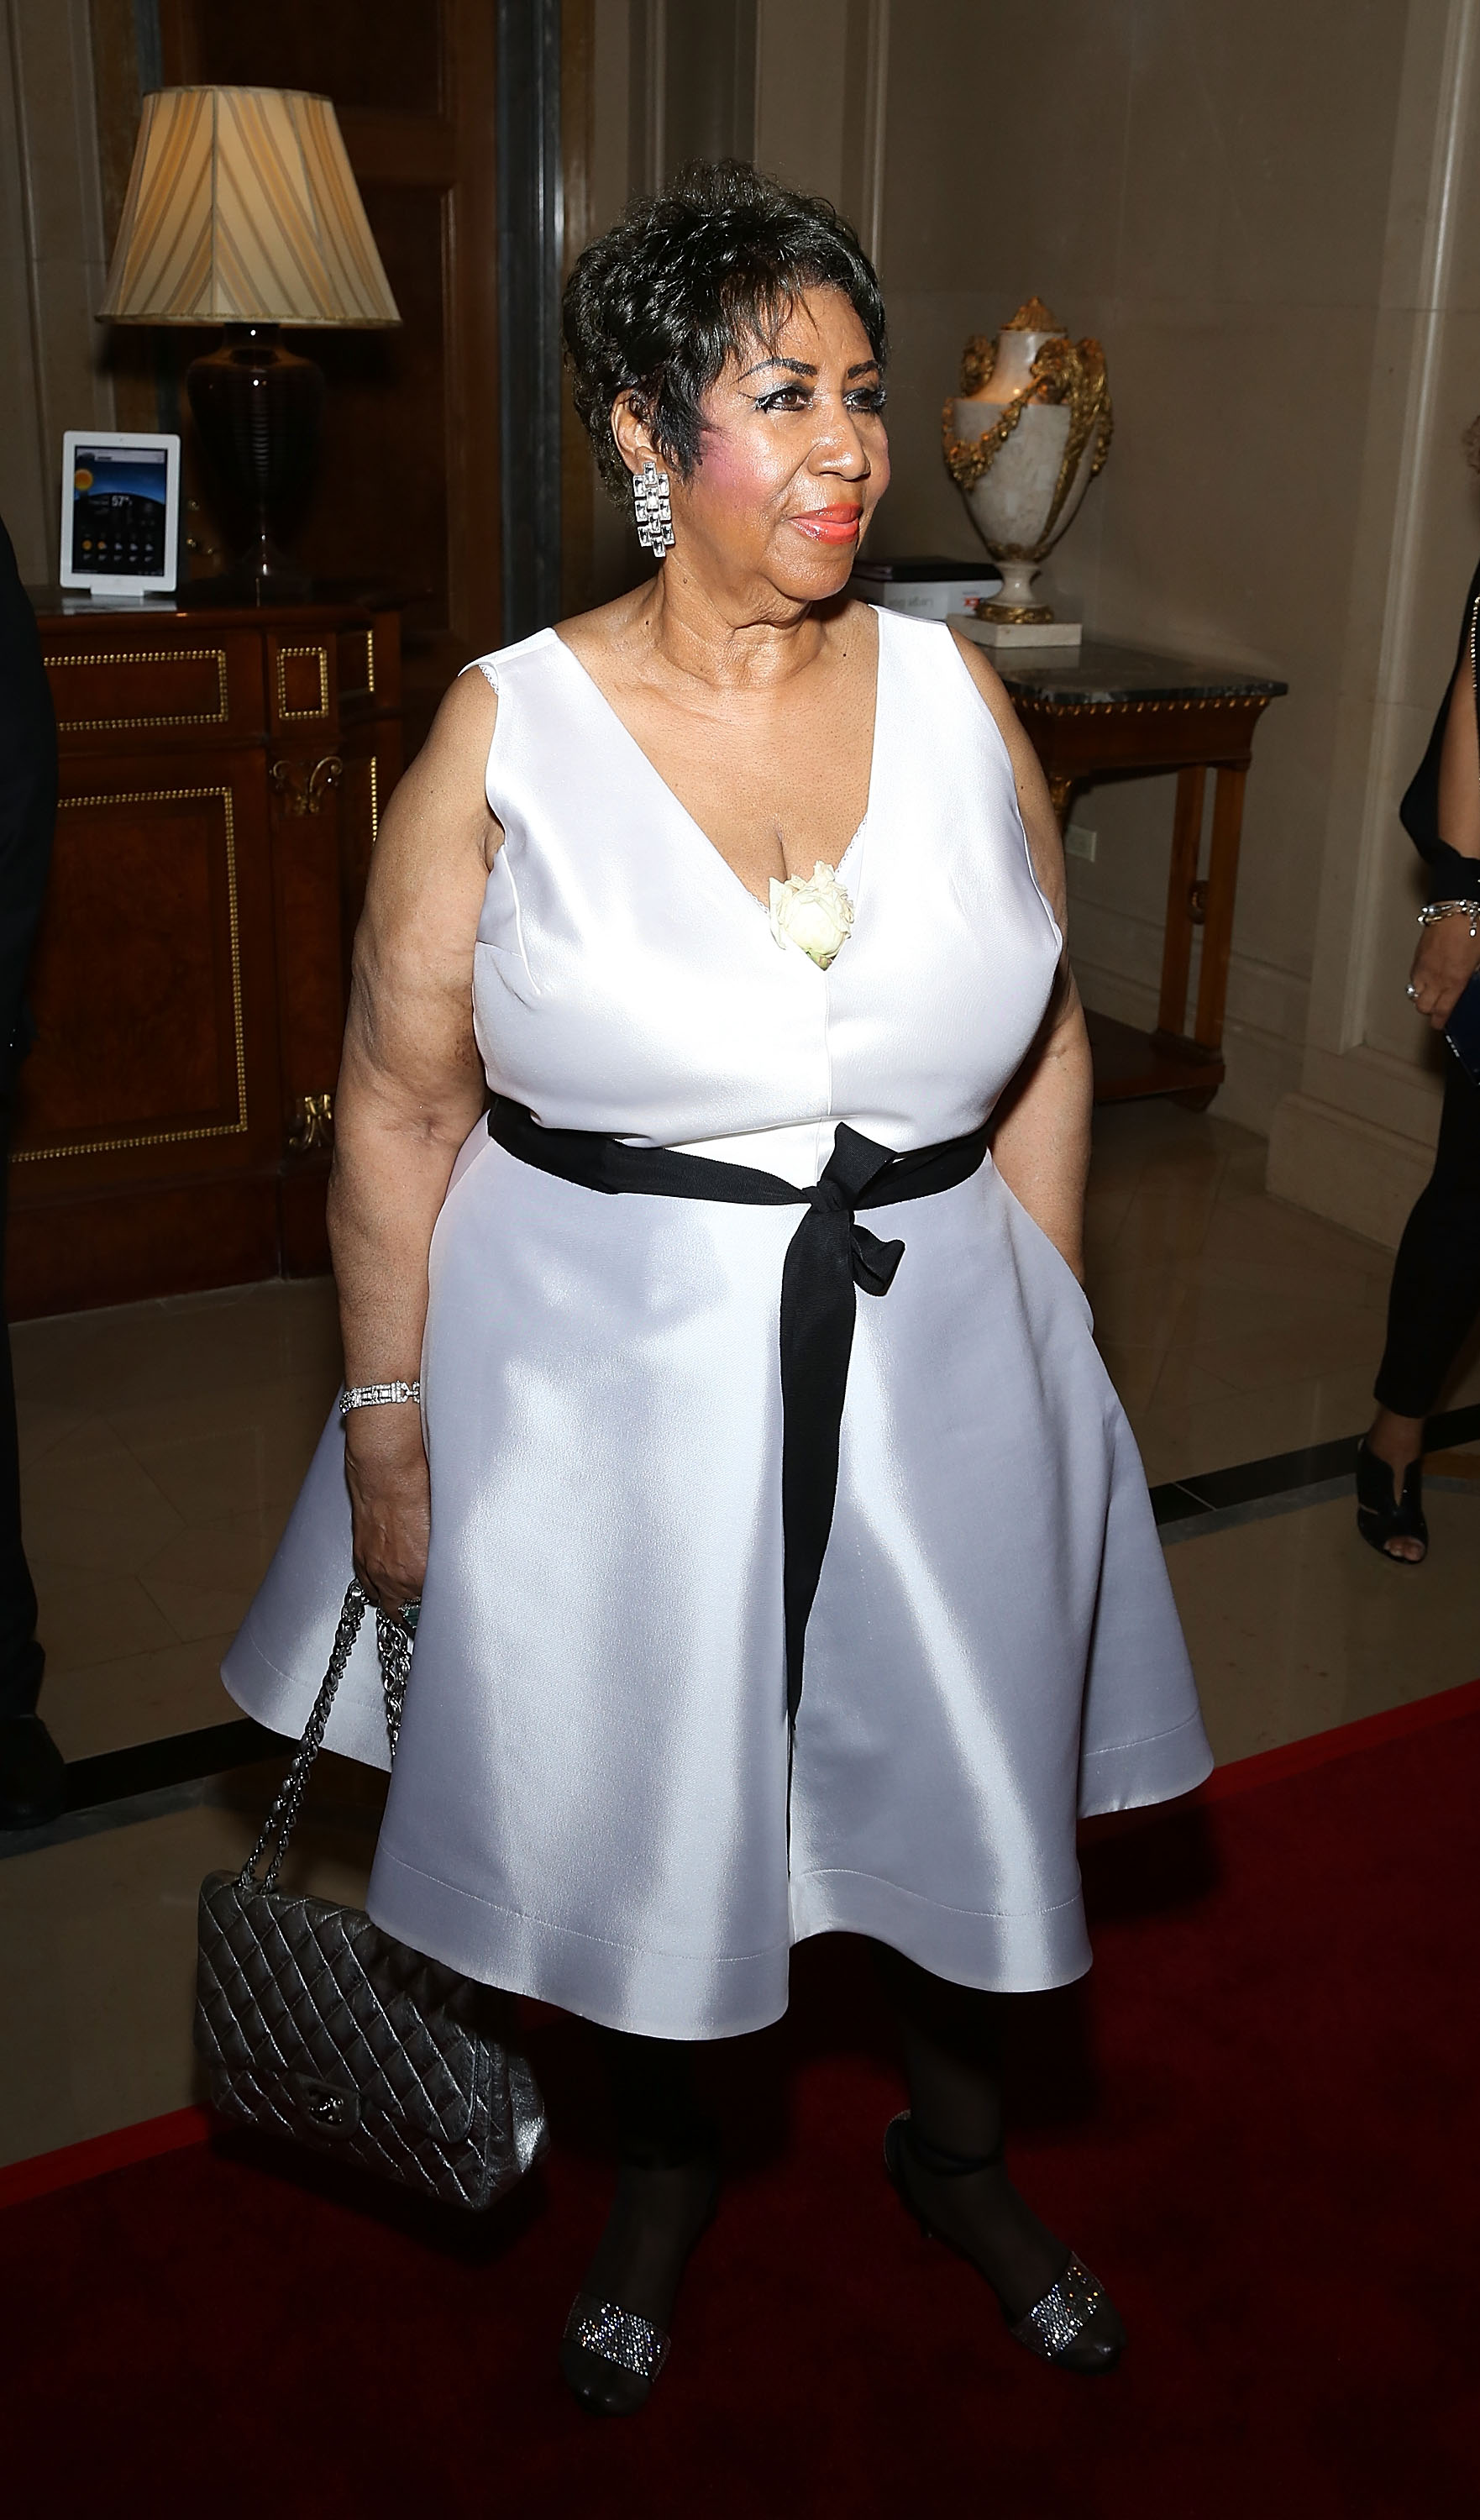 Арета Франклин на праздновании своего 74-го дня рождения в нью-йоркском The Ritz-Carlton, 14 апреля 2016
